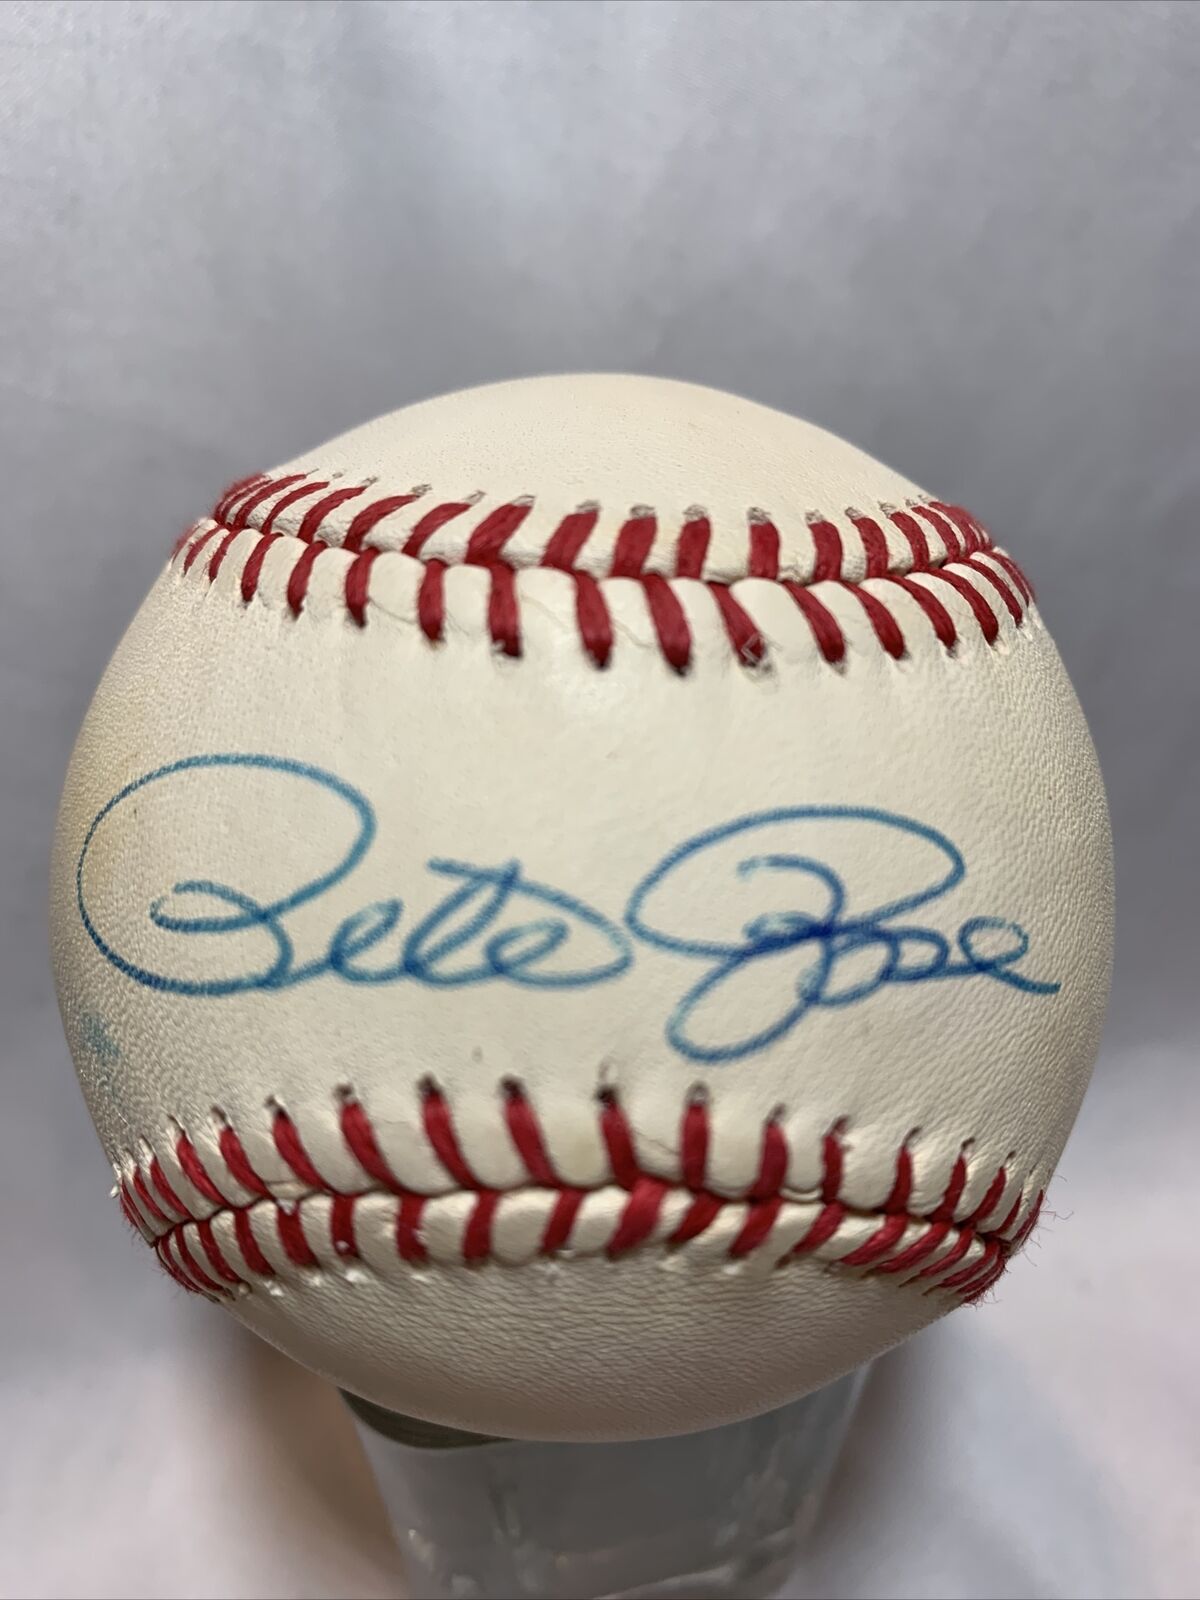 Pete Rose Cincinnati Reds Baseball Autographed with COA